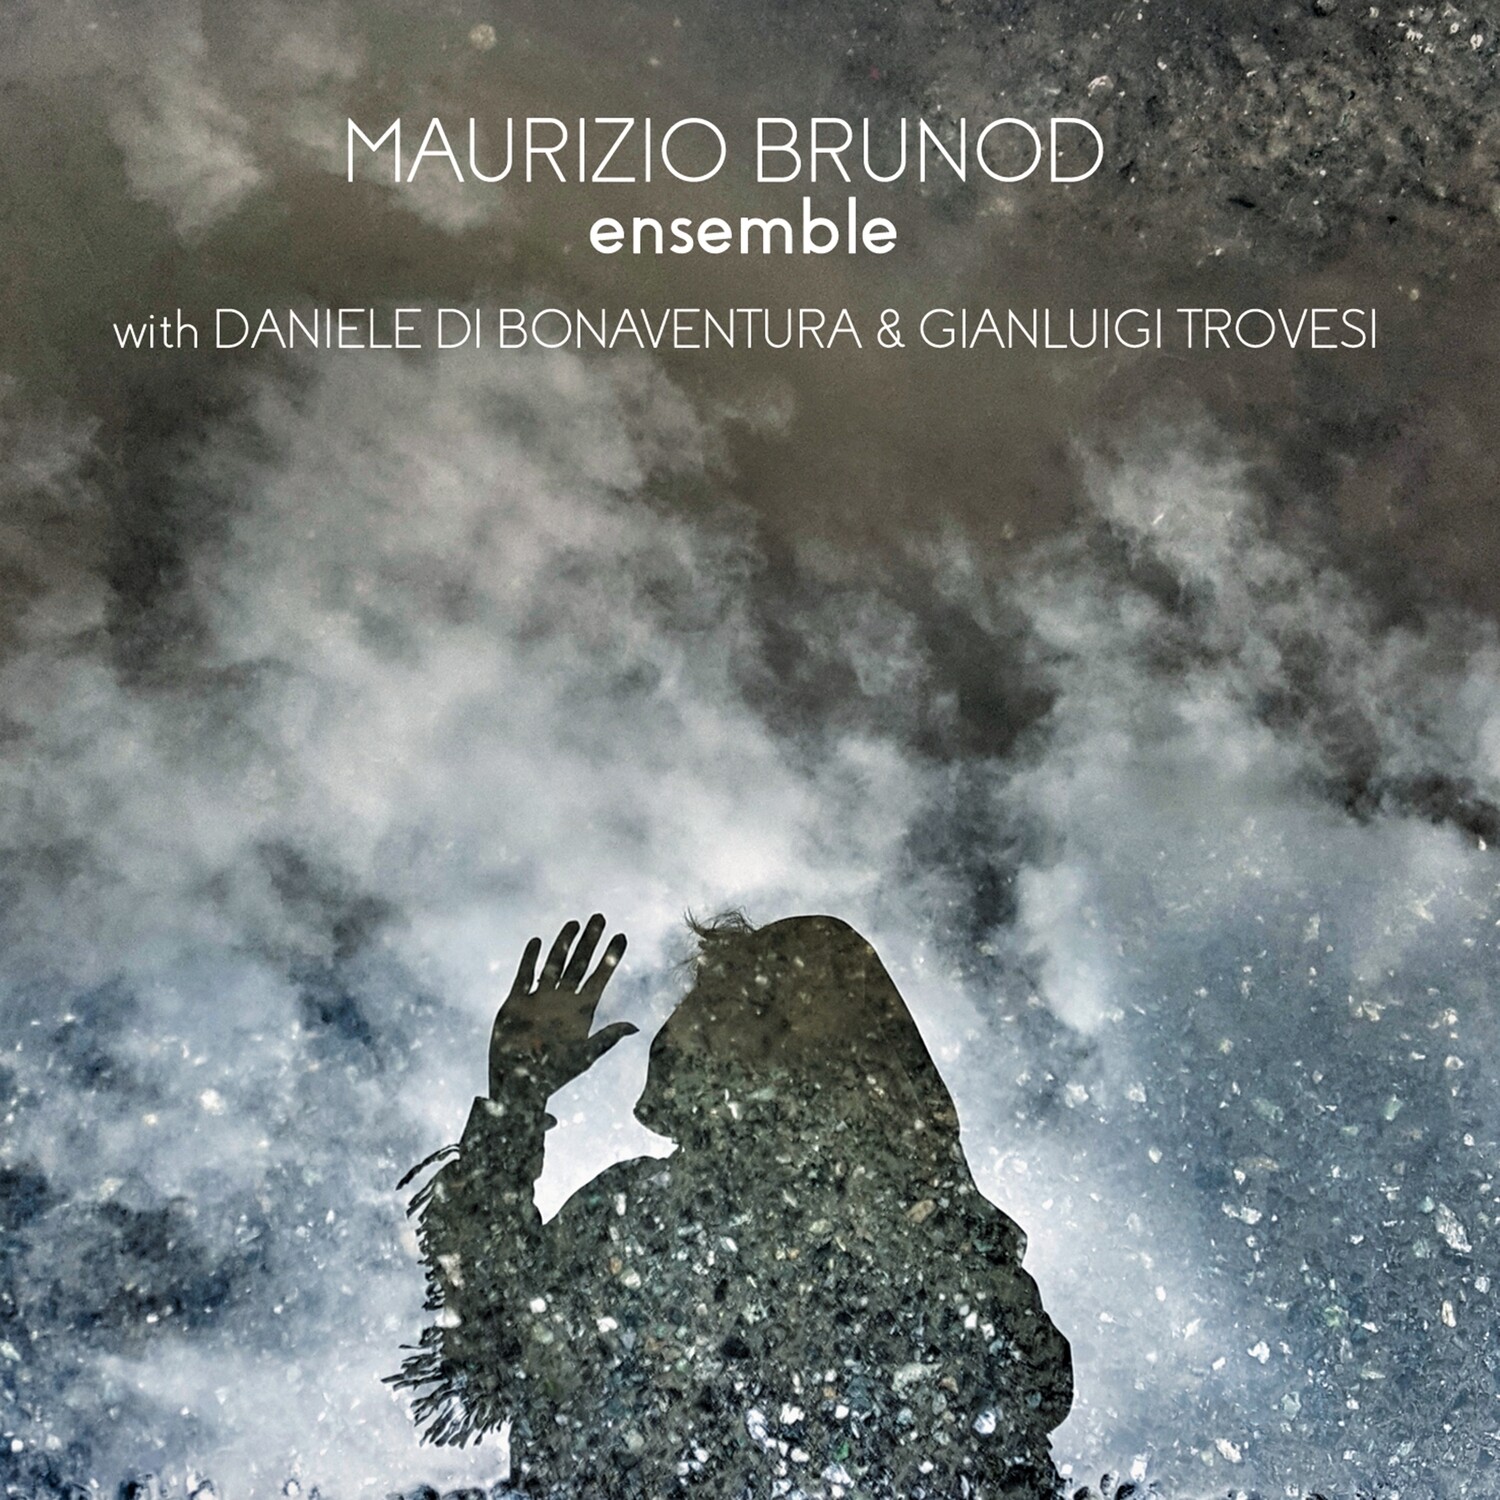 MAURIZIO BRUNOD feat. Daniele di Bonaventura & Gianluigi Trovesi «Ensemble»